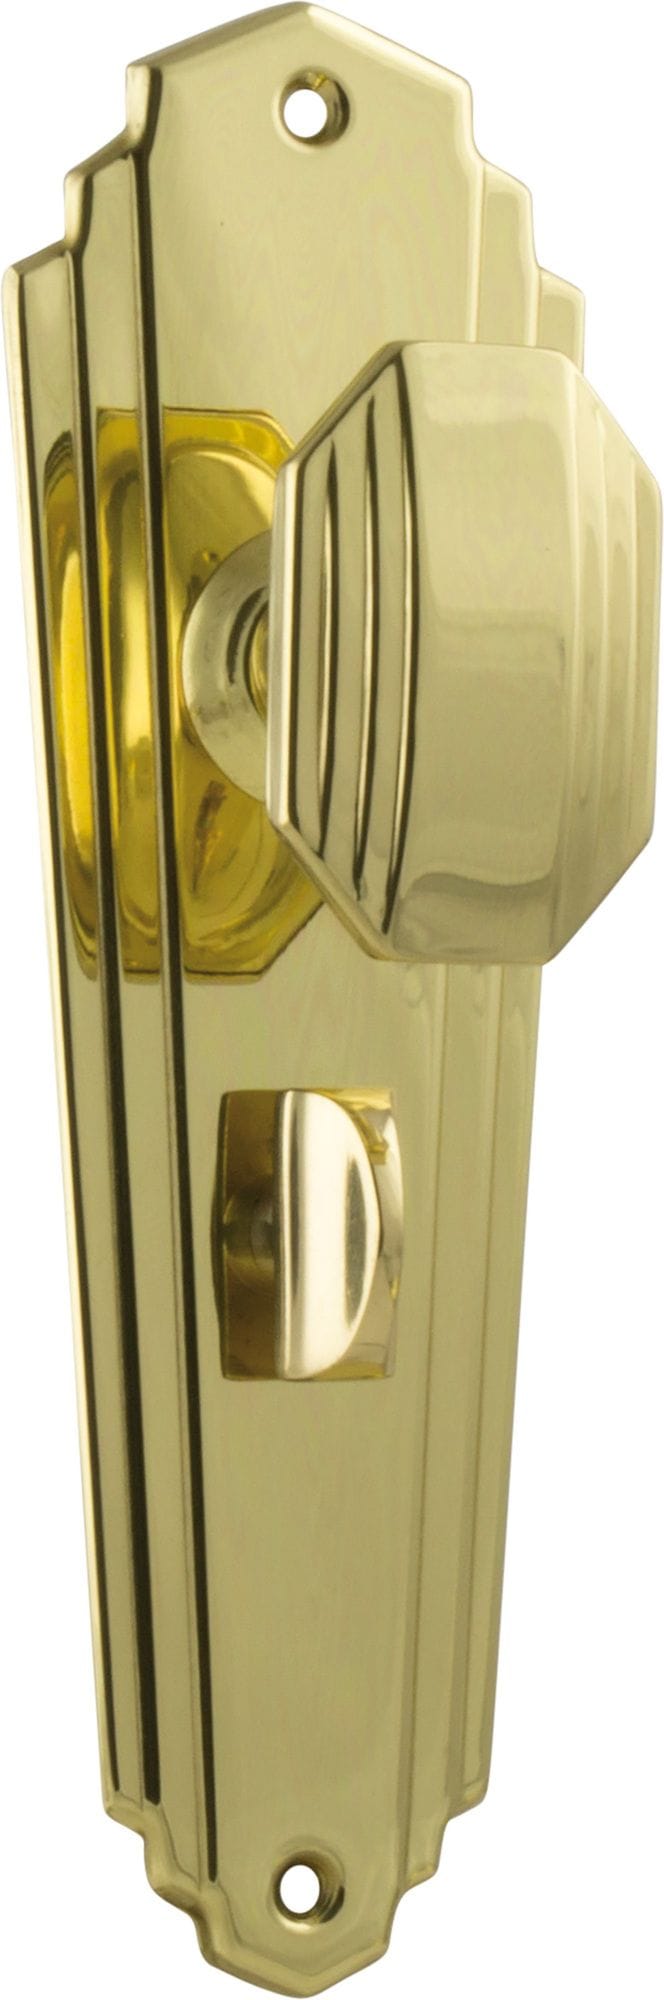 Elwood Art Deco Knob Privacy Polished Brass